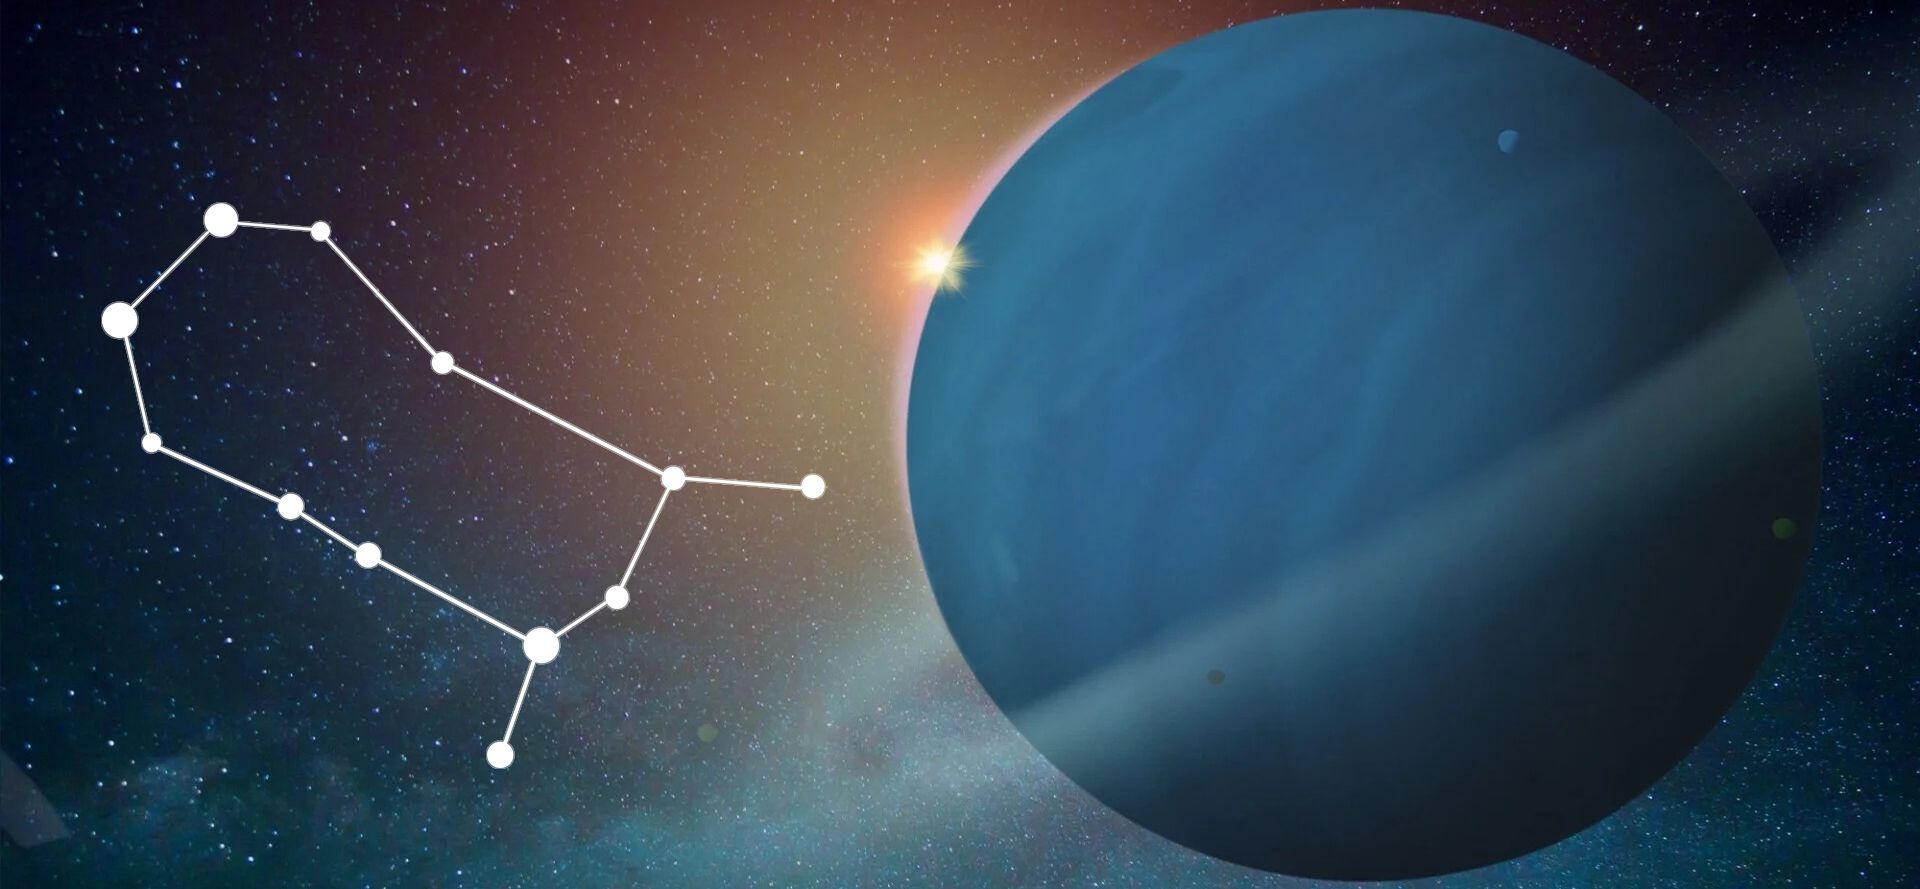 Uranus and Gemini constellation.